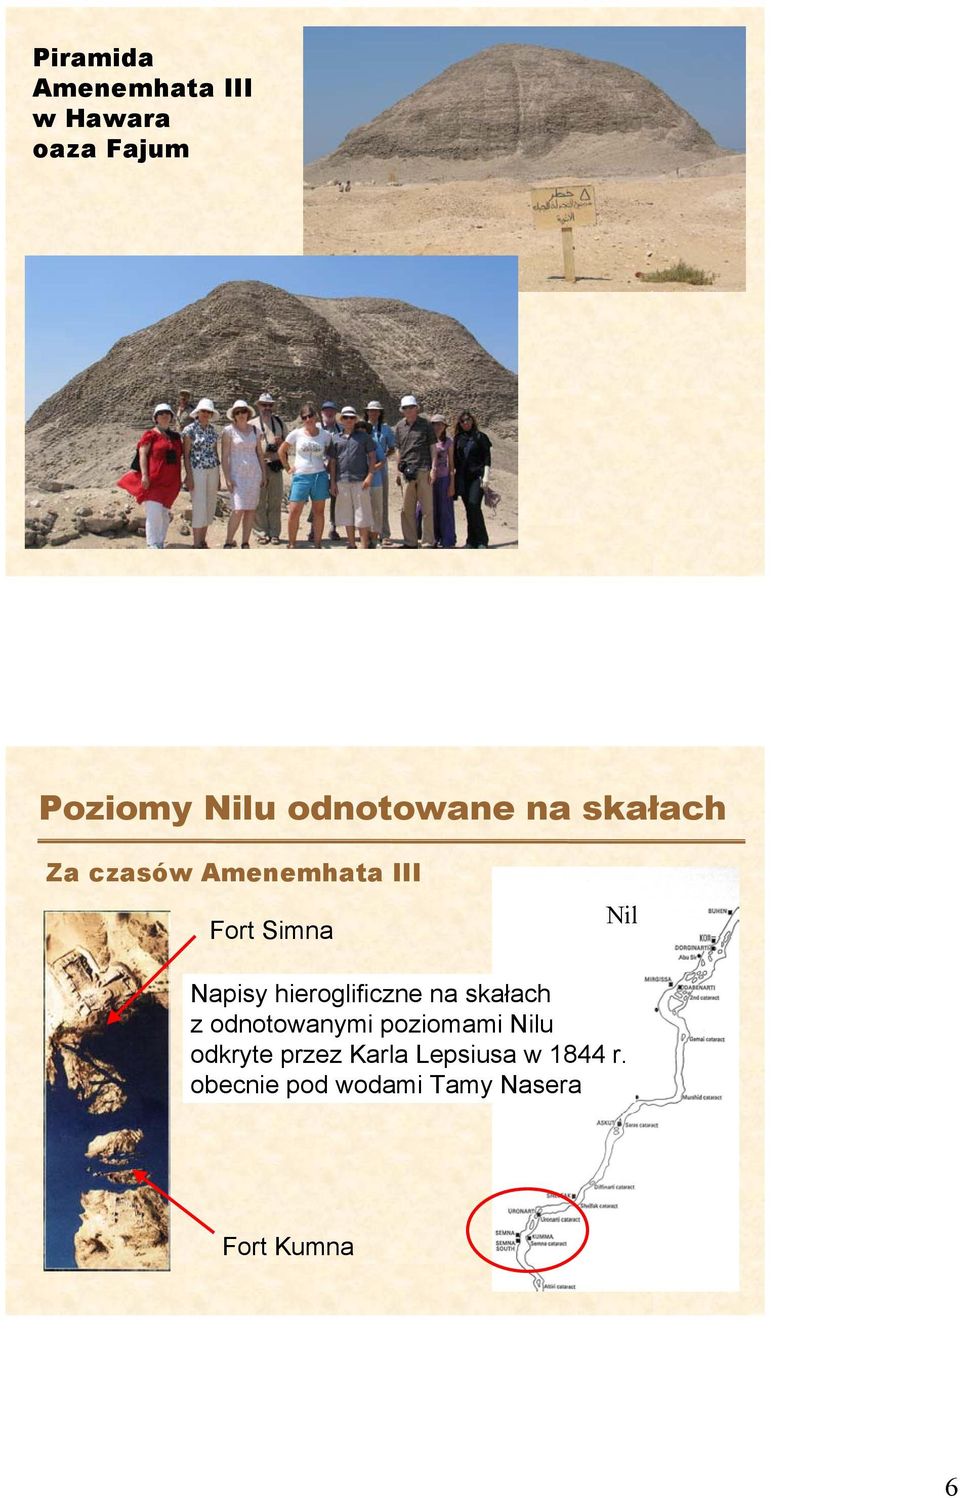 Napisy hieroglificzne na skałach z odnotowanymi poziomami Nilu